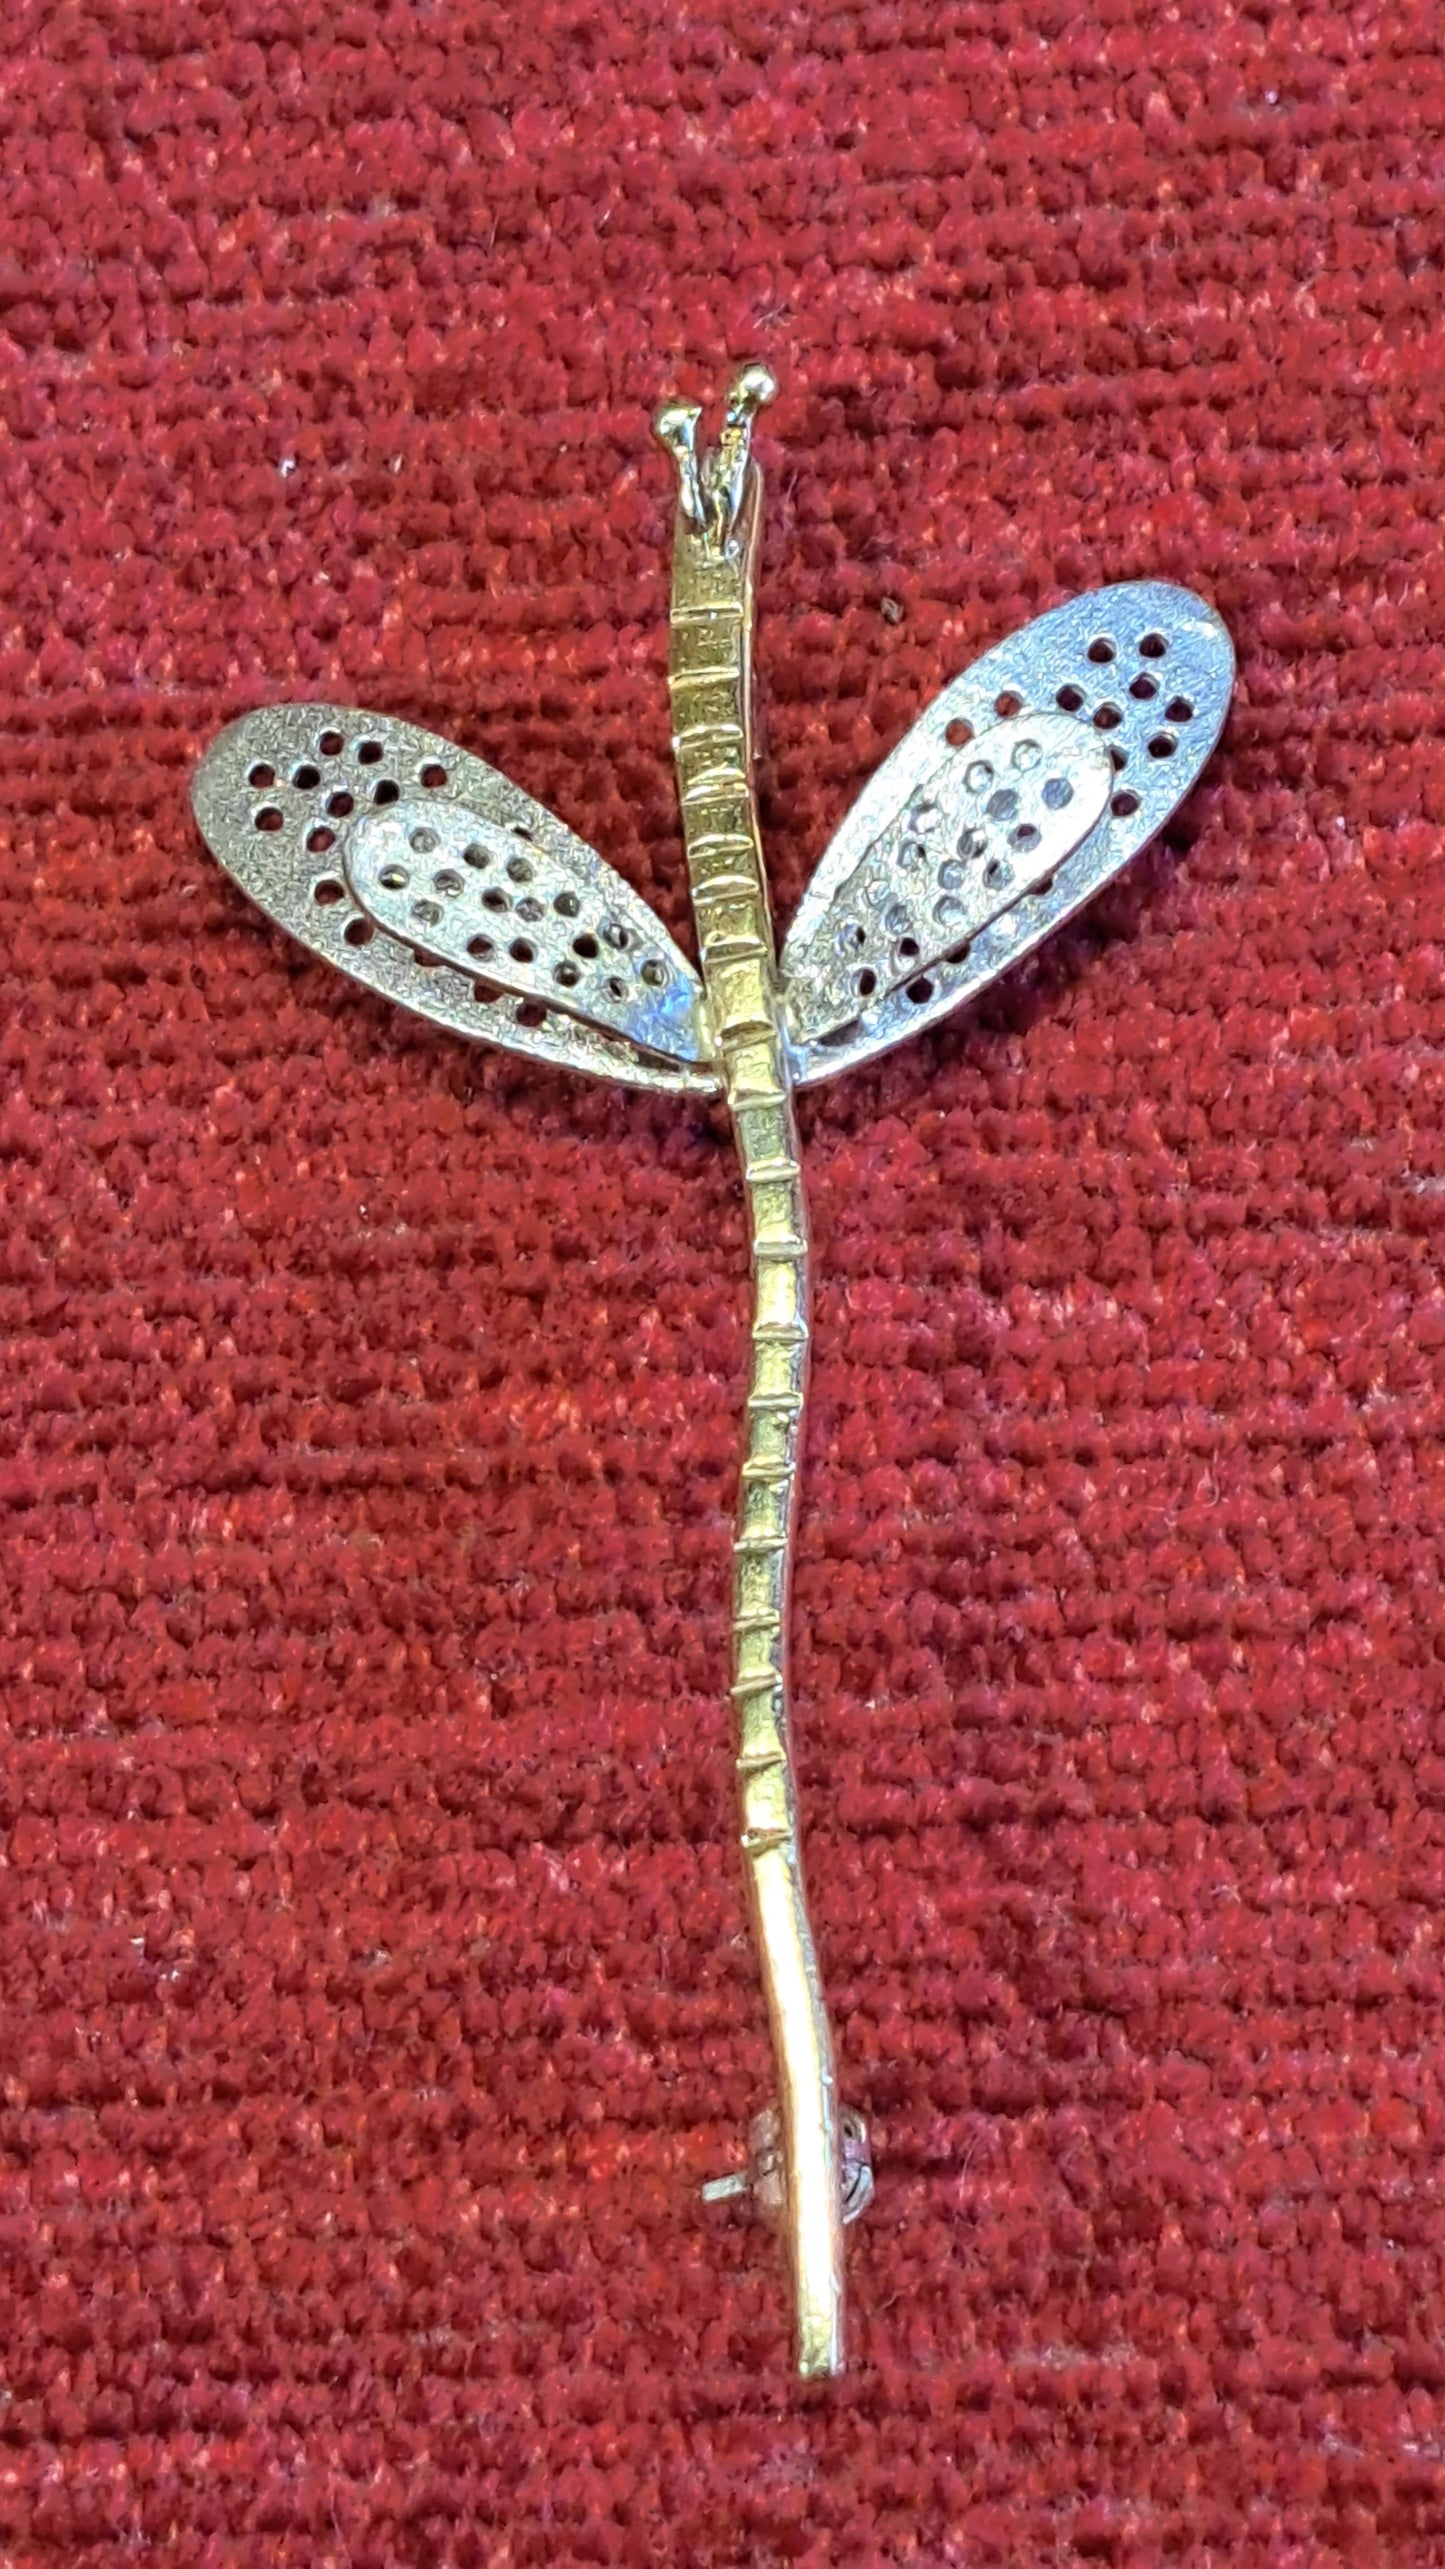 Dragon fly sterling silver brooch